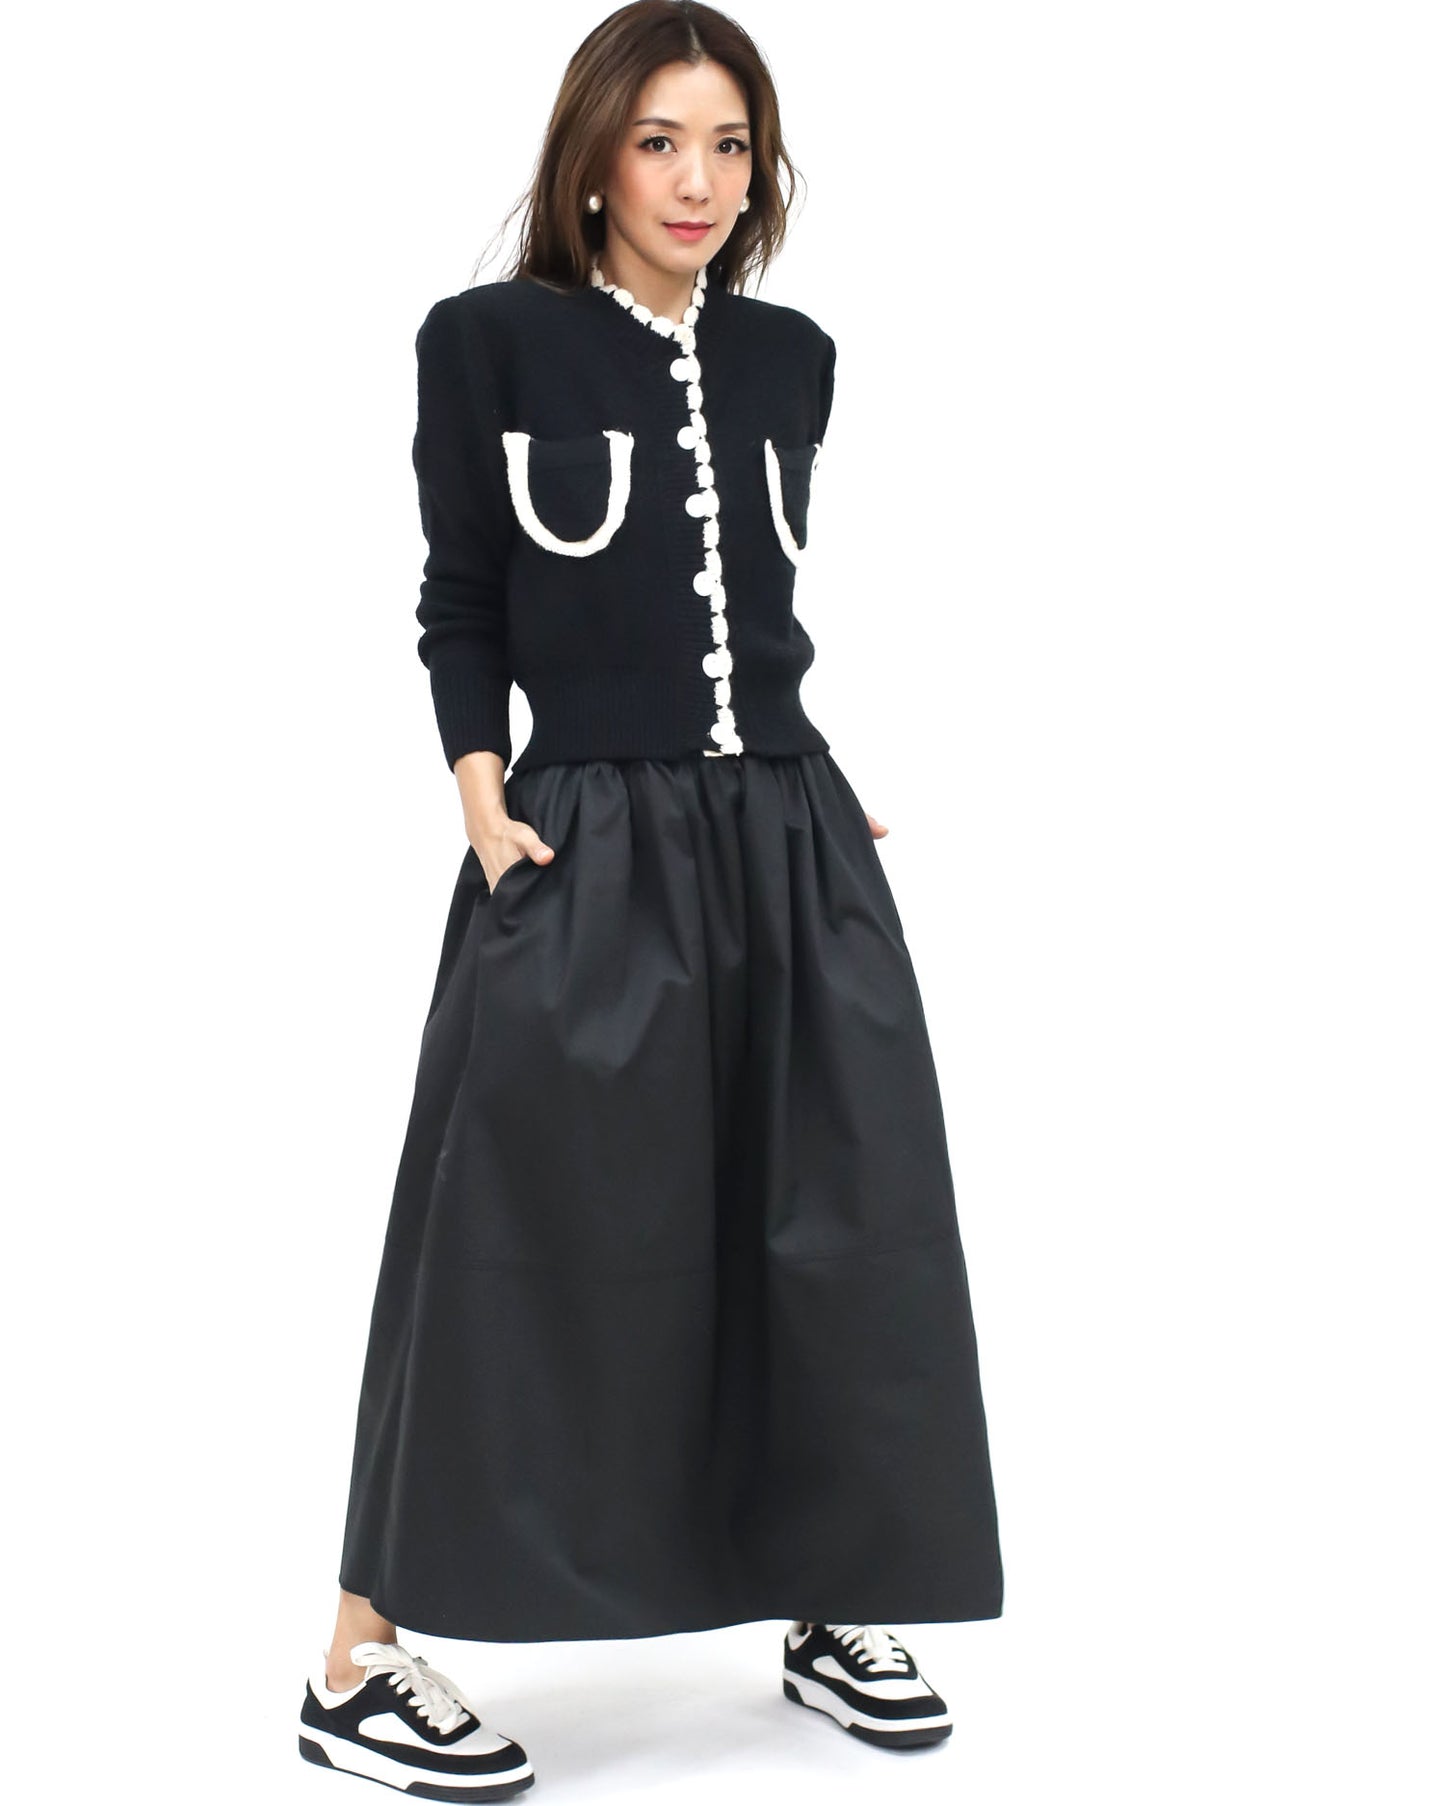 black flare cotton shirt skirt *pre-order*